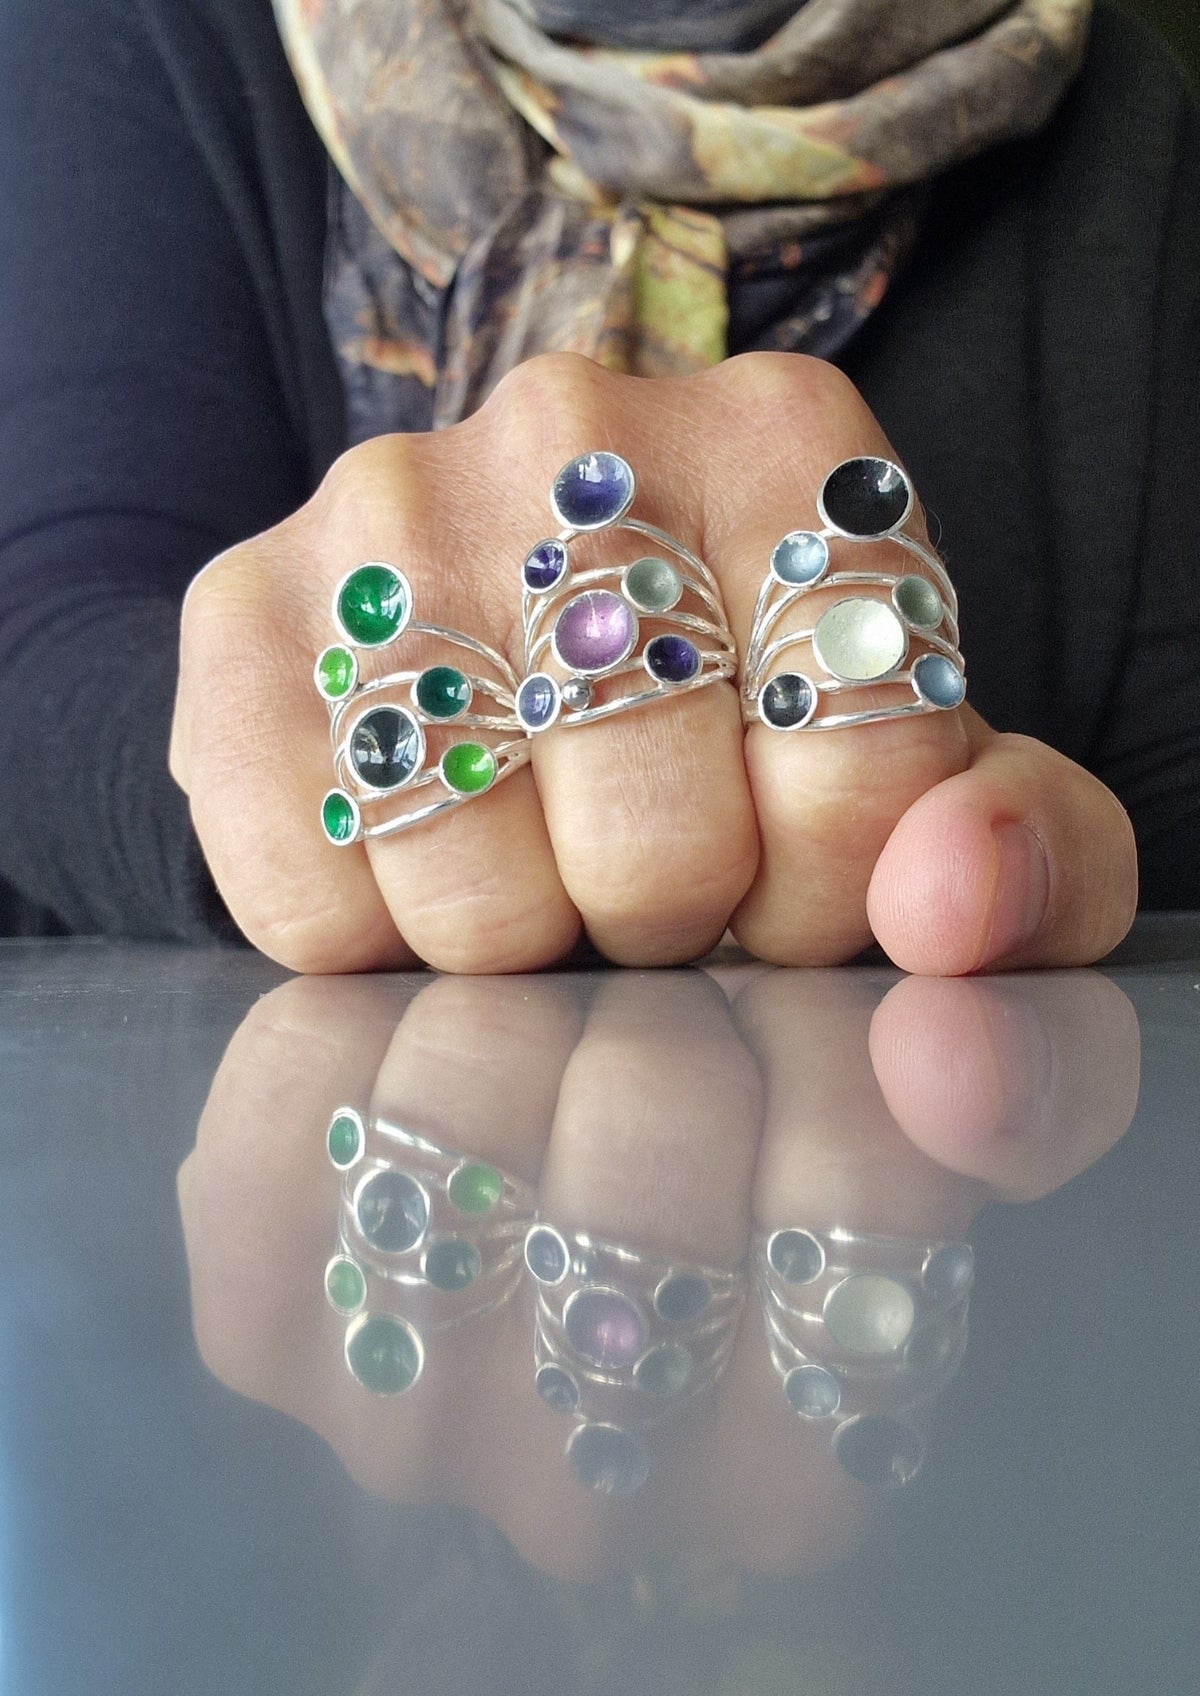 Embla Smykker Ring Embla Smykker- Boble ring med seks bobler kunstkolonialen